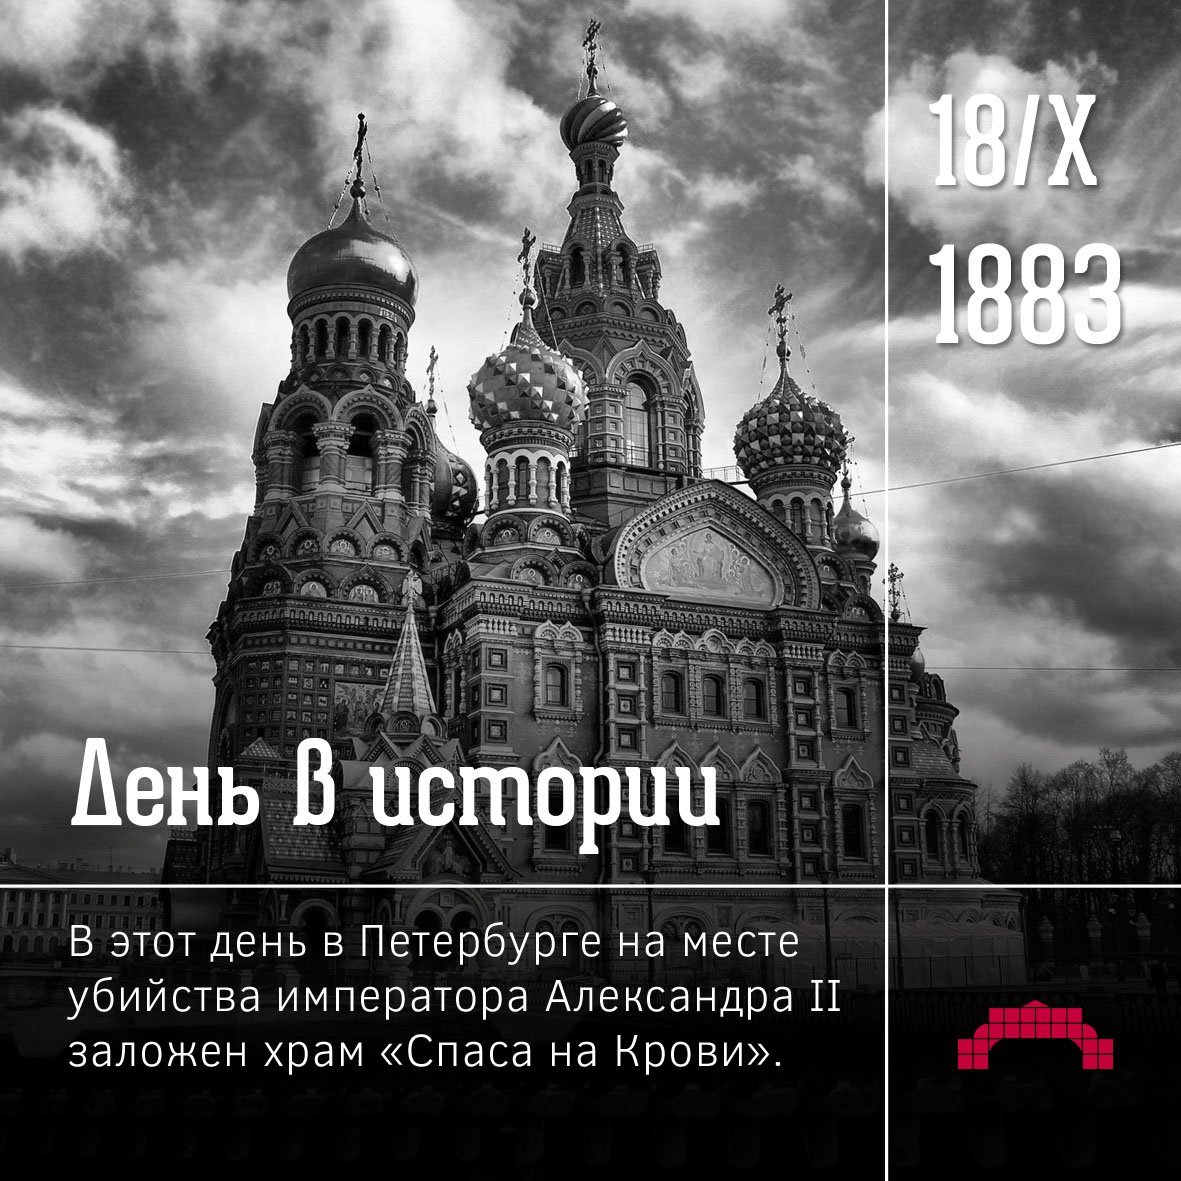 Сколько лет храму на крови. 18 Октября 1883 года в Петербурге был заложен храм «Спаса на крови»..